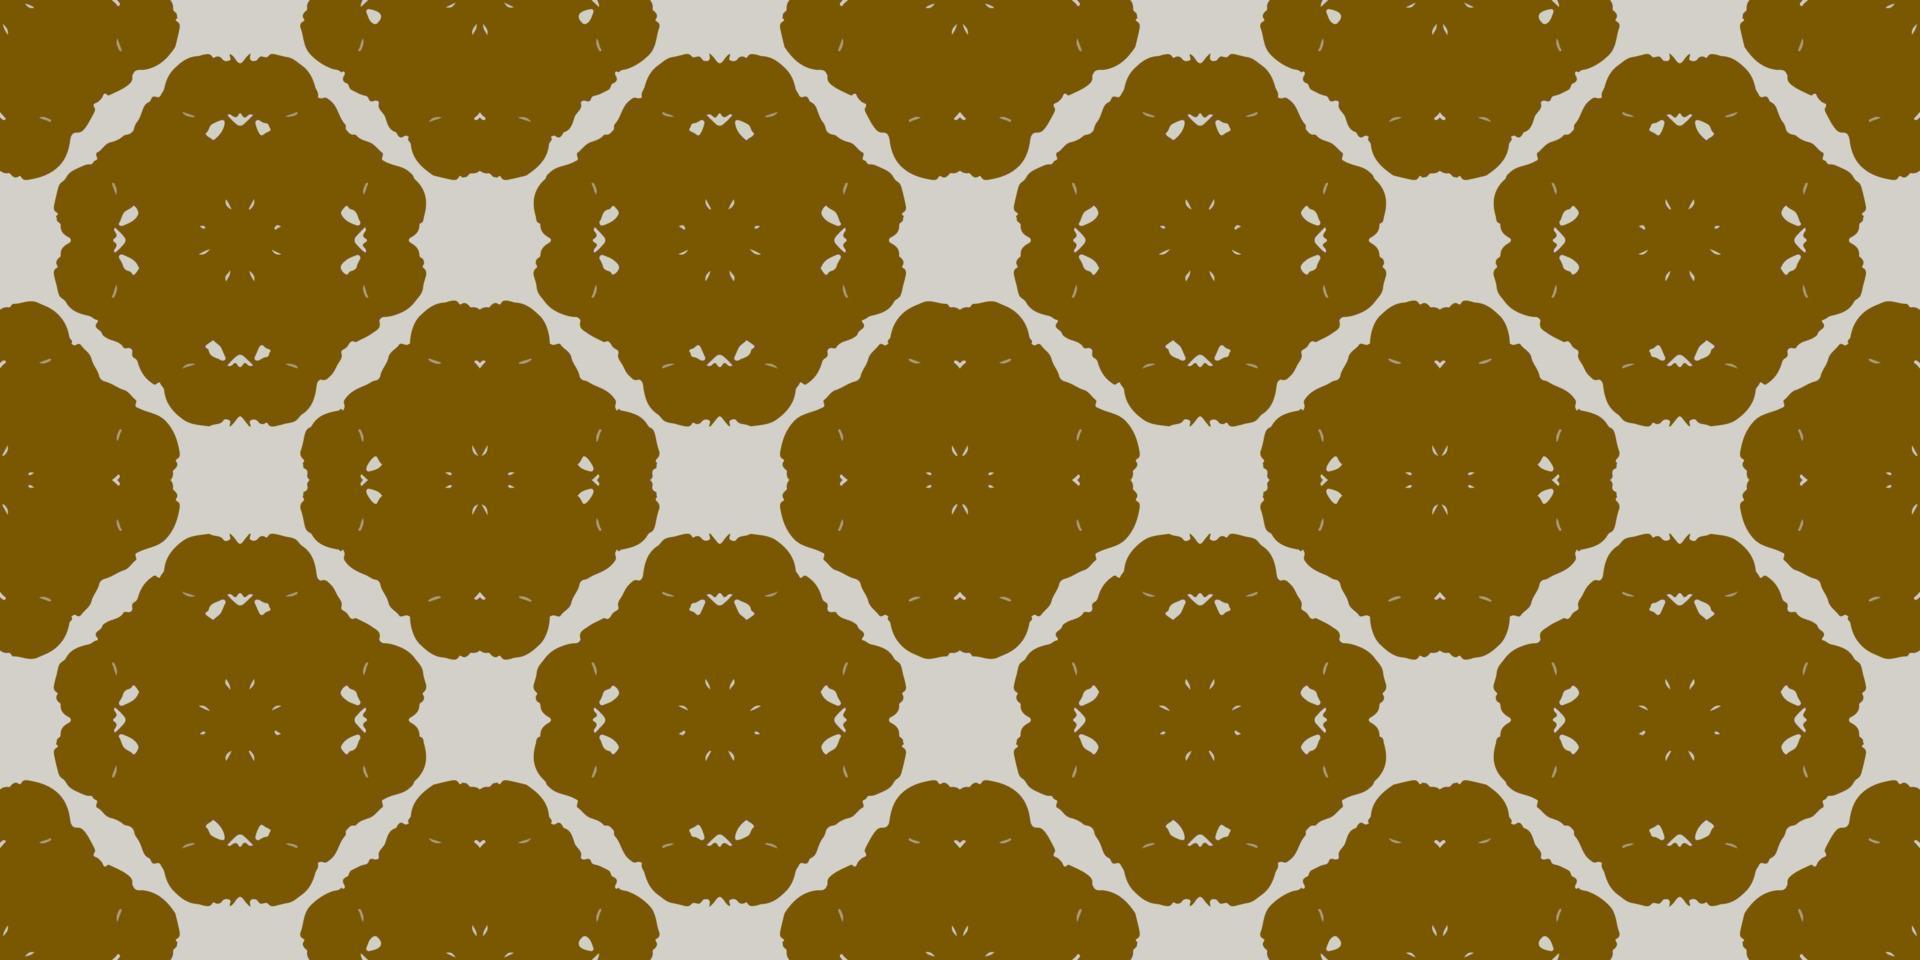 abstract naadloos patroon, ontworpen voor gebruik voor interieur,behang,stof,gordijn,tapijt,kleding,batik,satijn,achtergrond , illustratie, borduurwerk stijl. vector